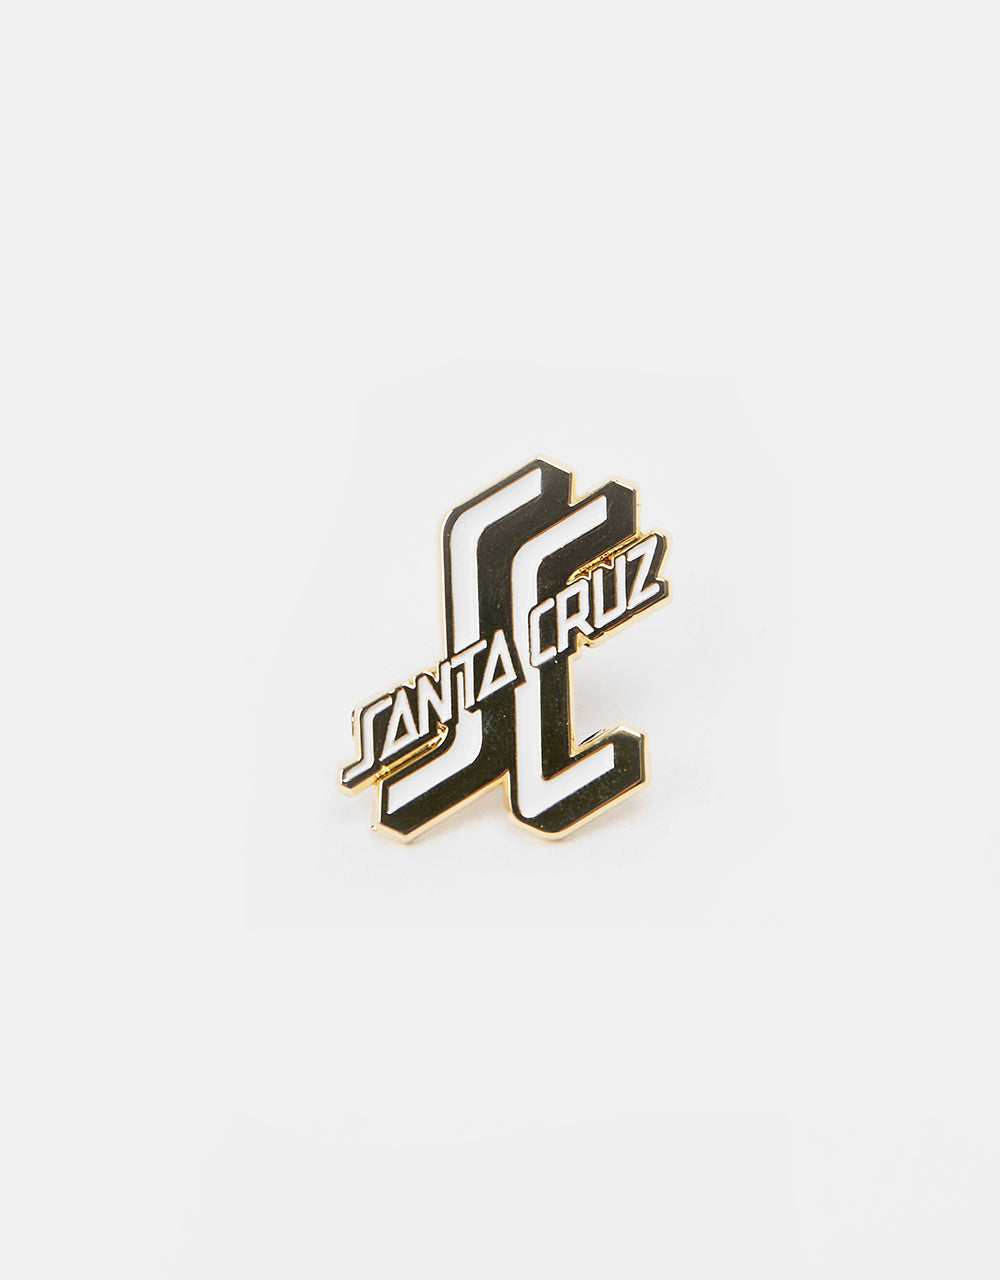 Santa Cruz OGSC Pin Badge - Gold